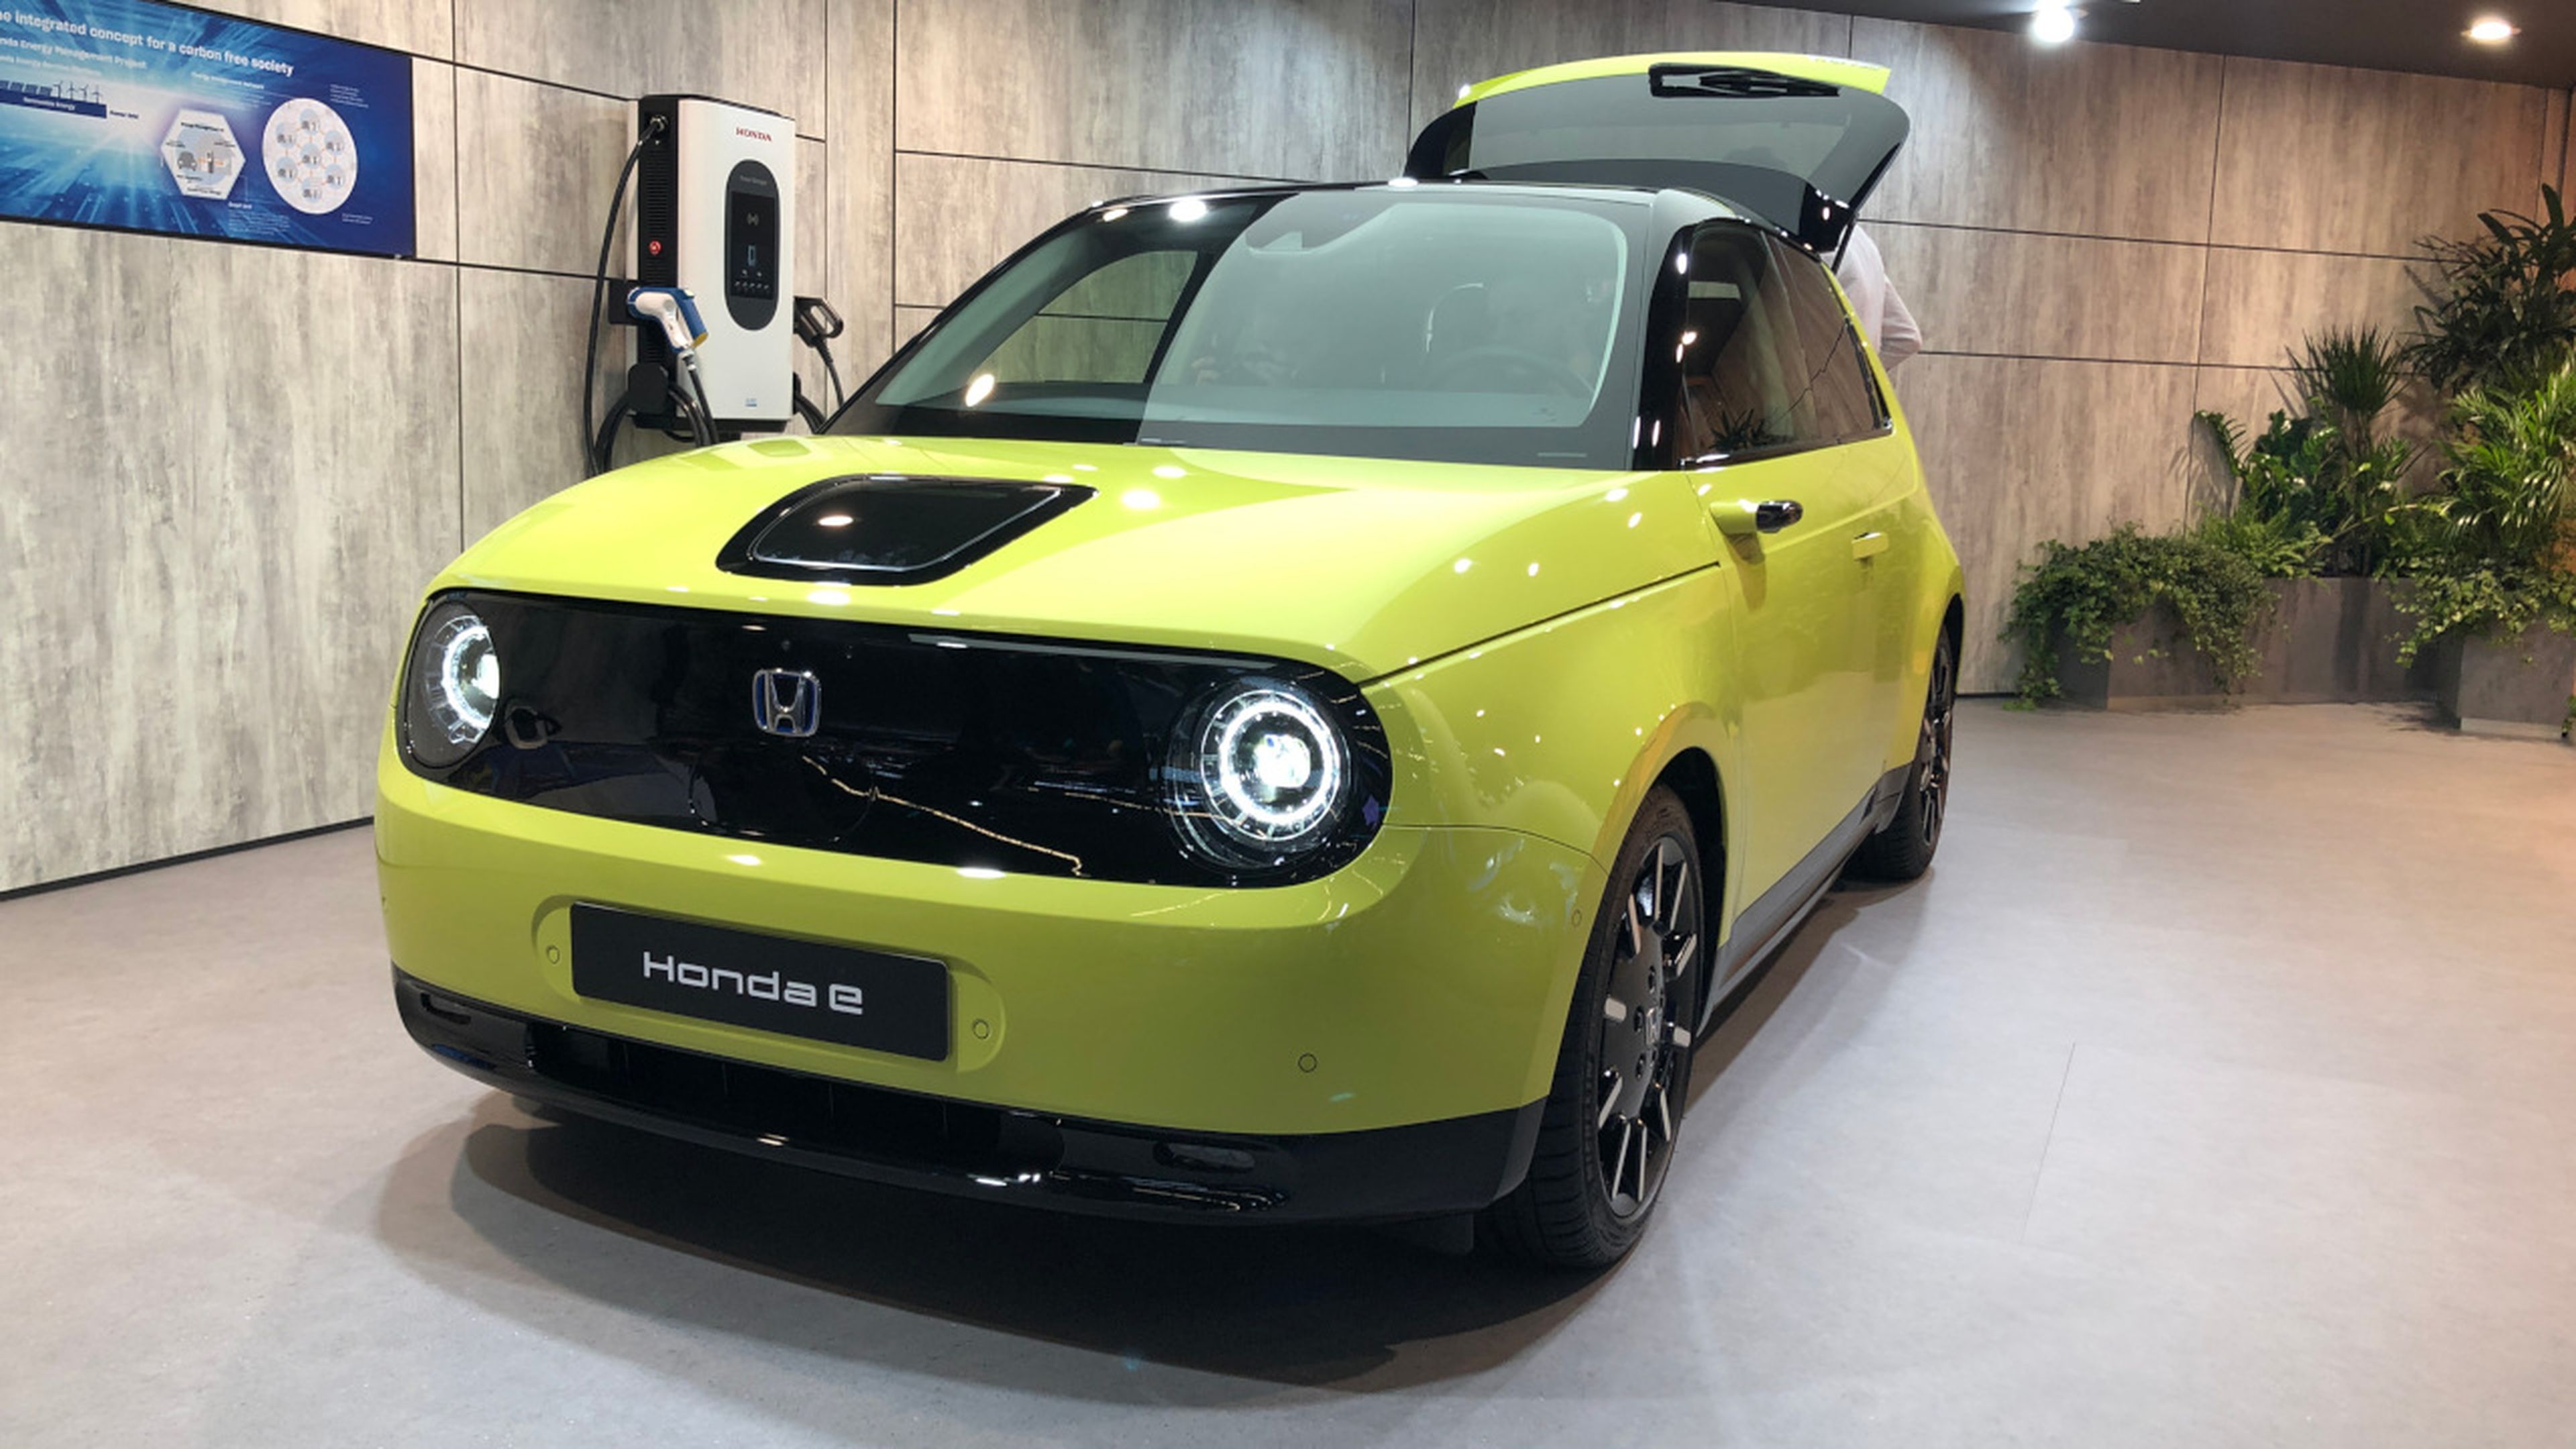 El eléctrico urbano Honda e también fue presentado en el Salón de Frankfurt 2019.